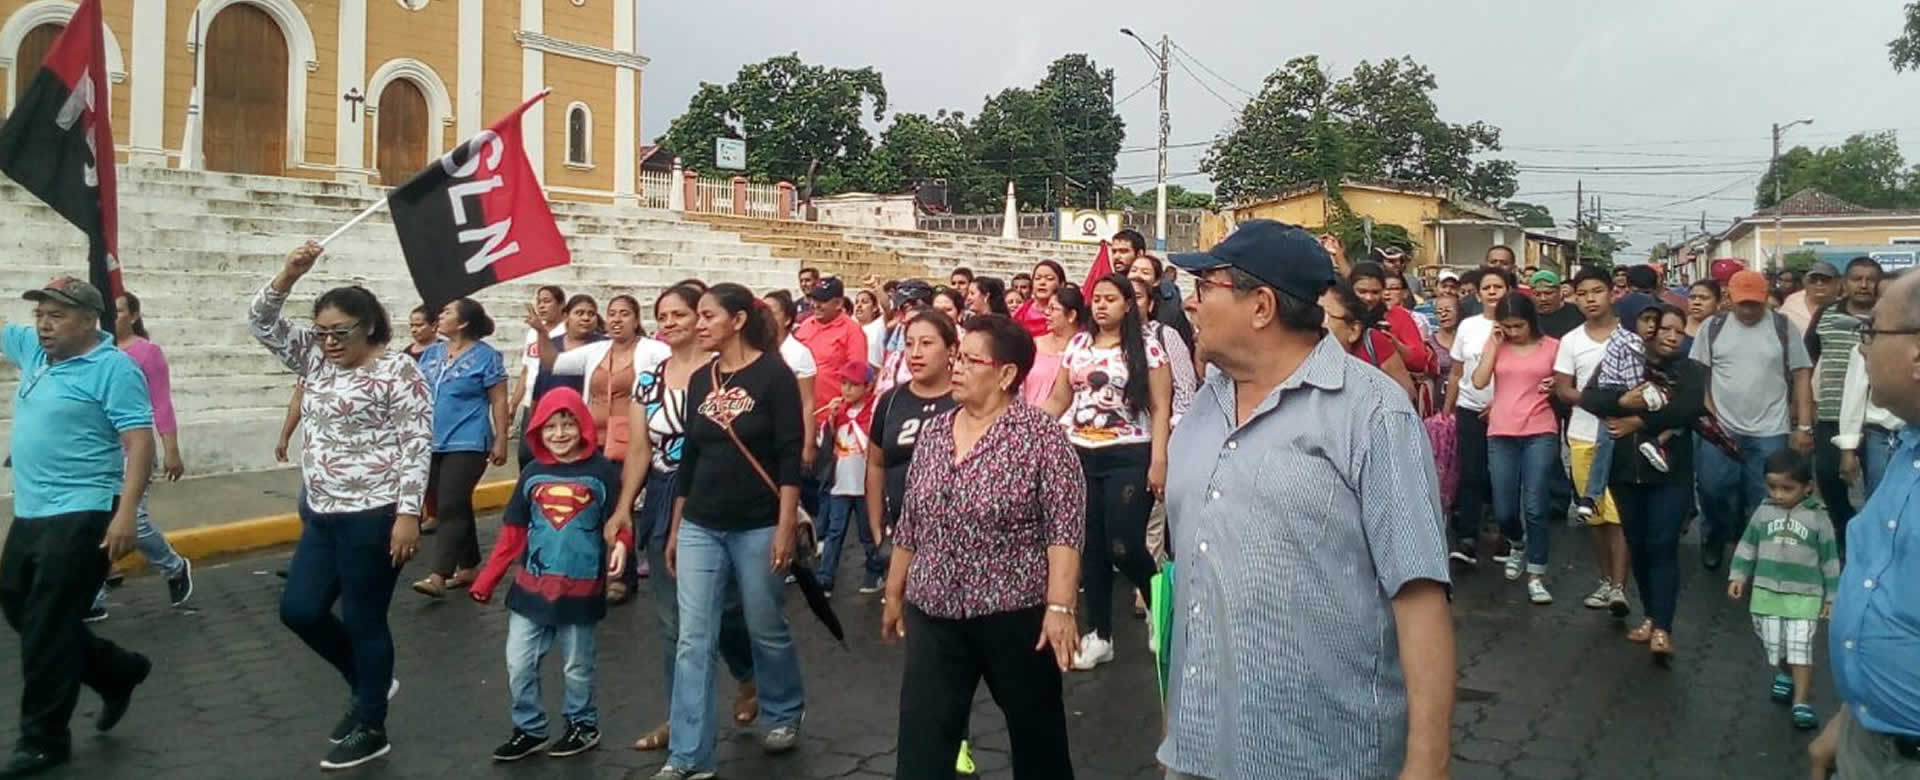 Habitantes de Masatepe participan en una marcha por la paz